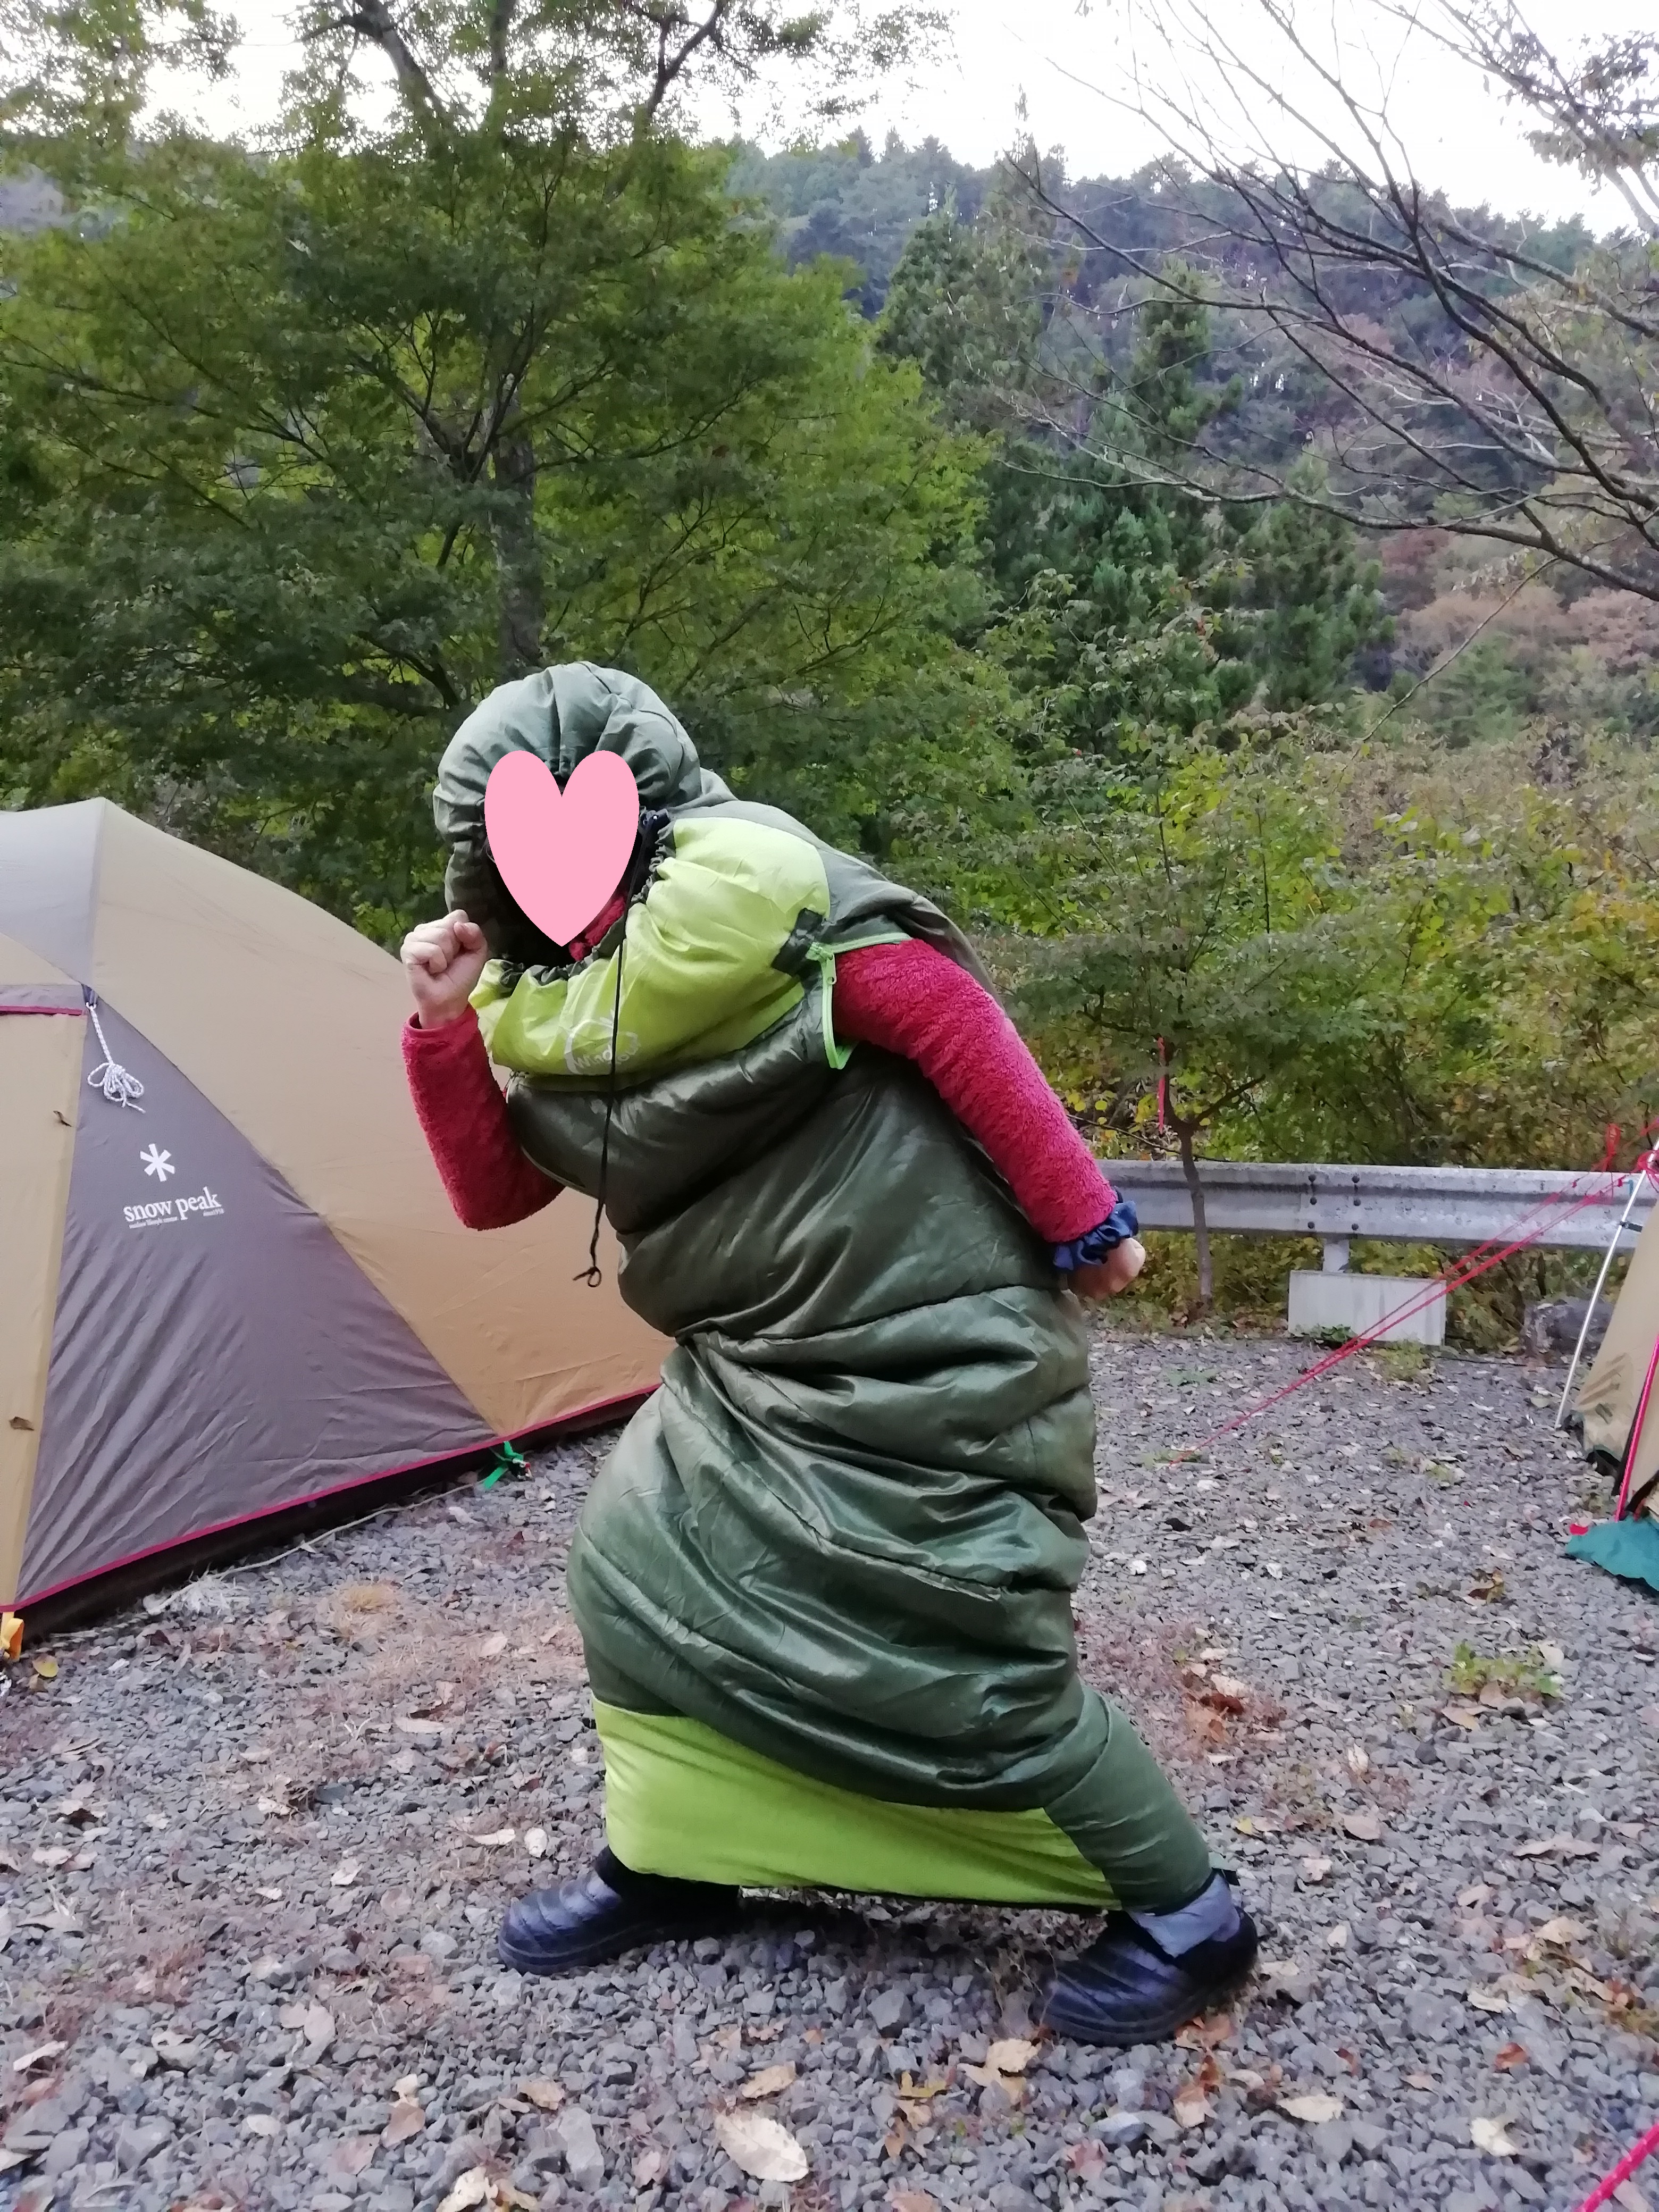 冬キャンプの装備 電源なしで挑むための服装振り返り ニガテなキャンプに 行ってみた